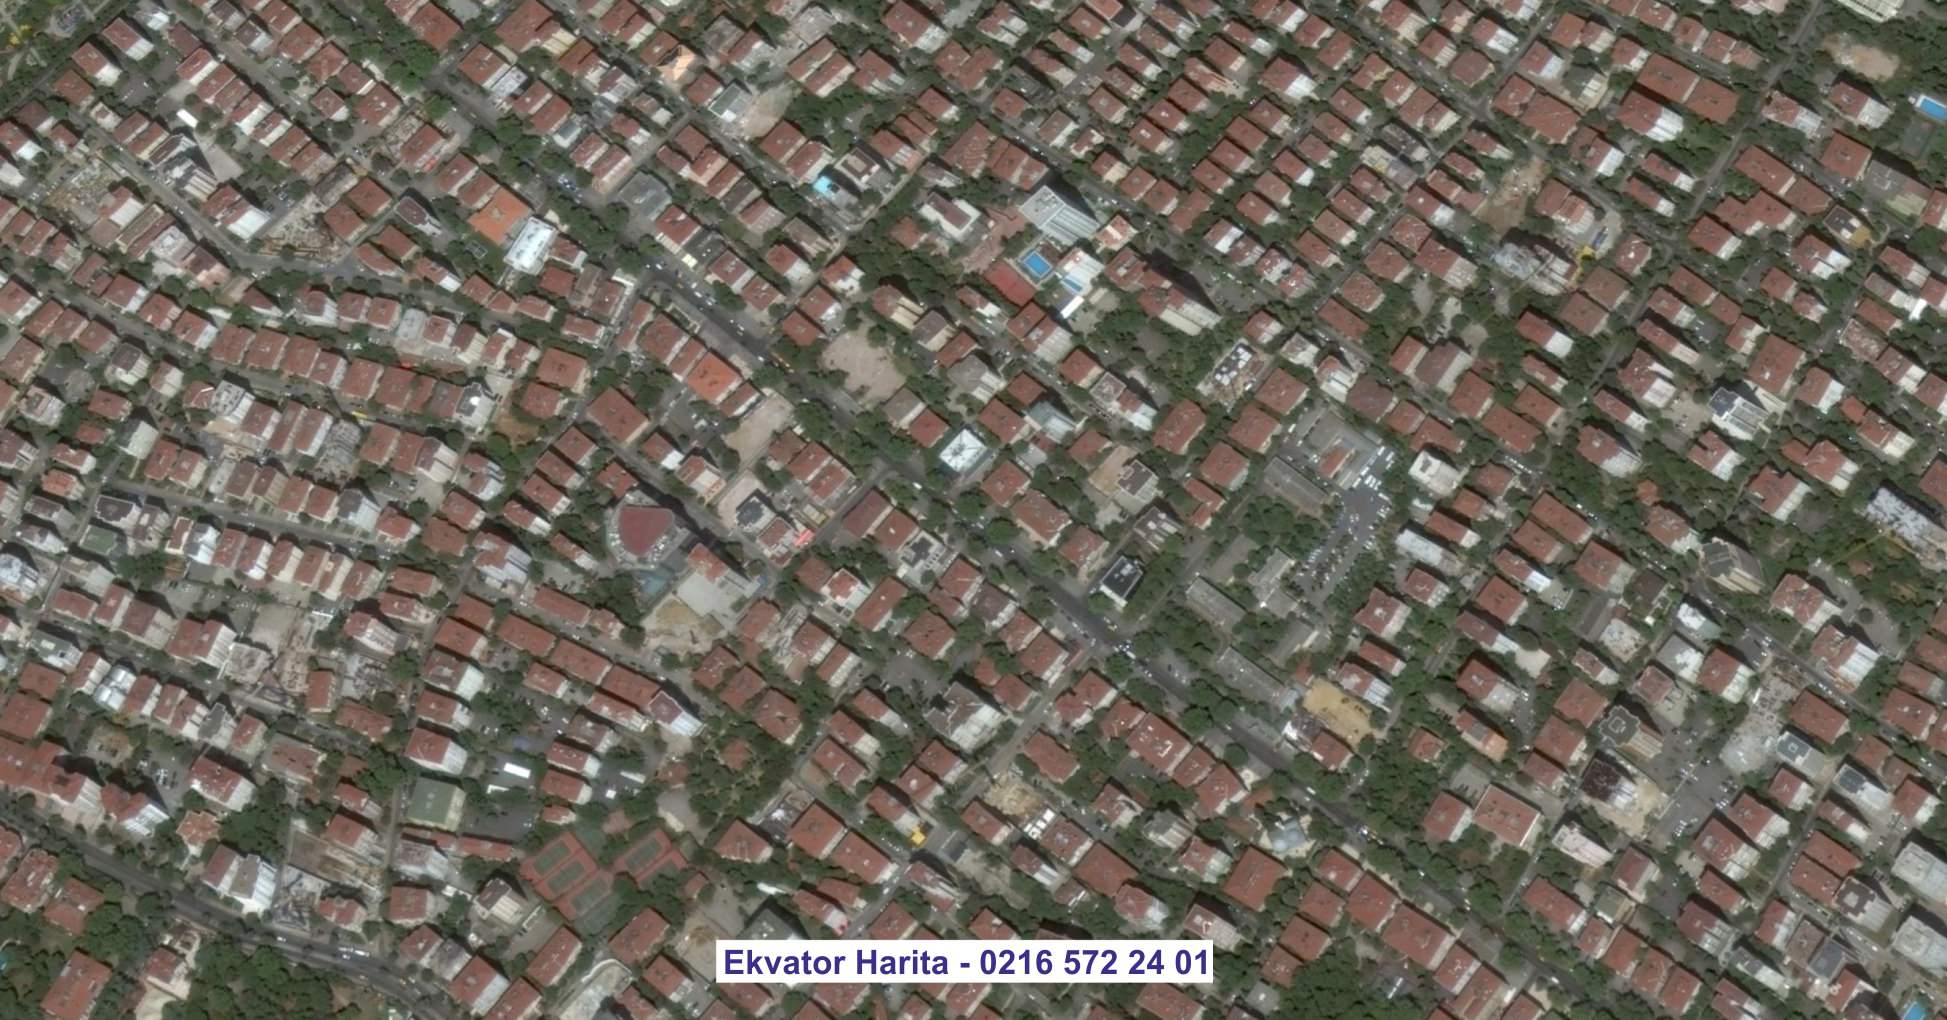 Keçiören Uydu Görüntüsü Örnek Fotoğrafı